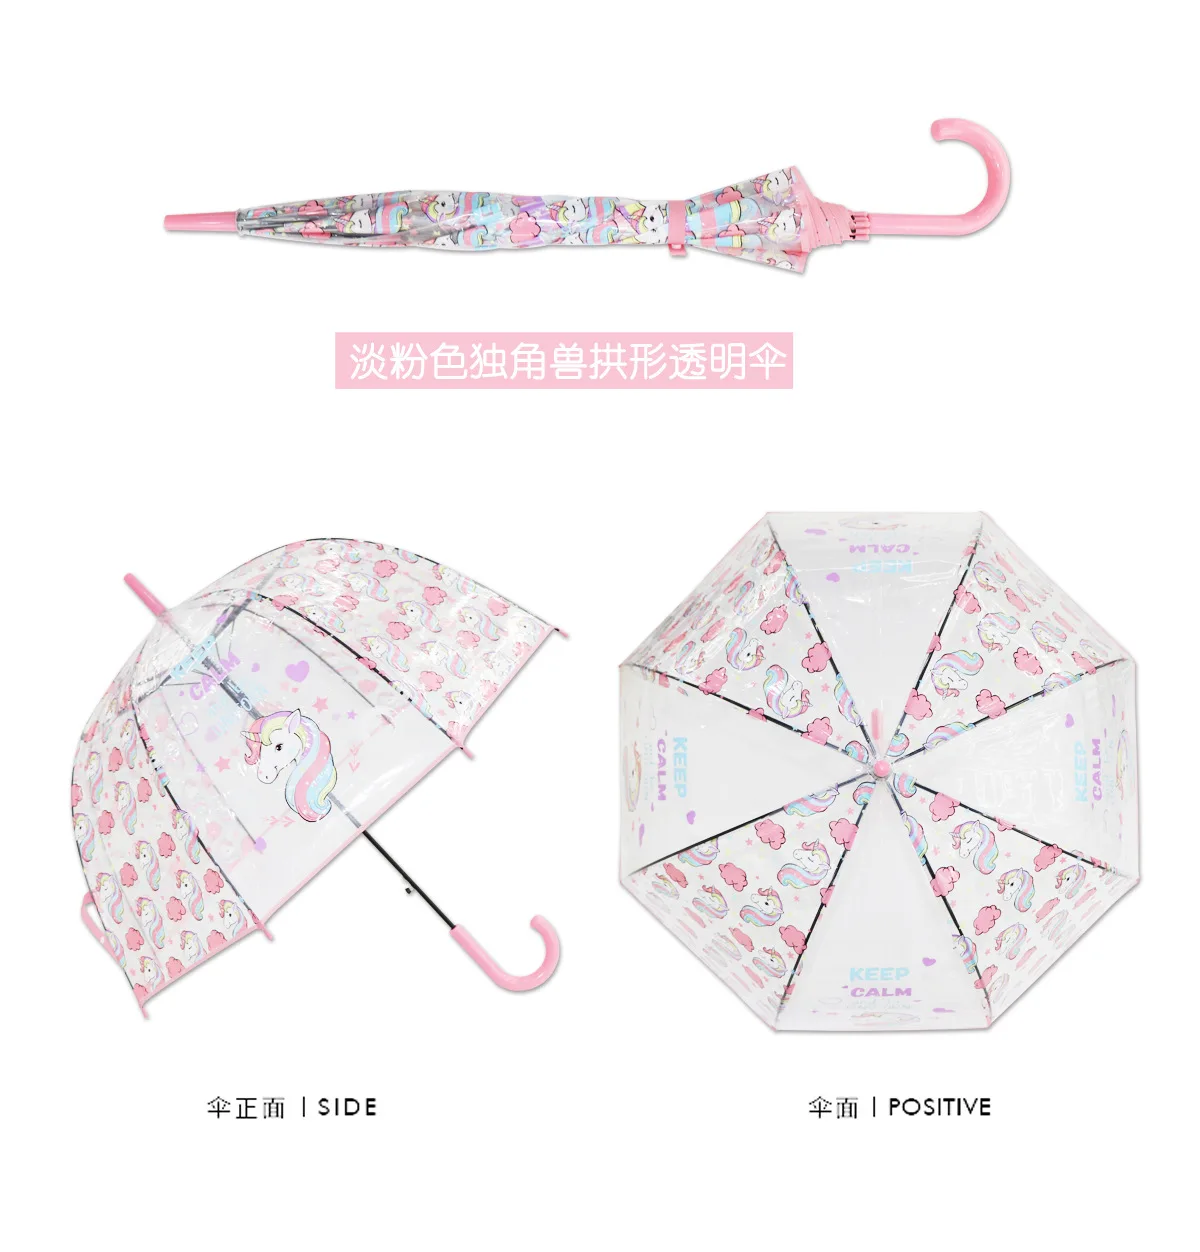 Европейская мода Единорог прозрачный зонтик окружающей среды Утолщение Poe птица каркасный Зонт Леди длинная ручка с зонтиком зонтик - Цвет: Розовый